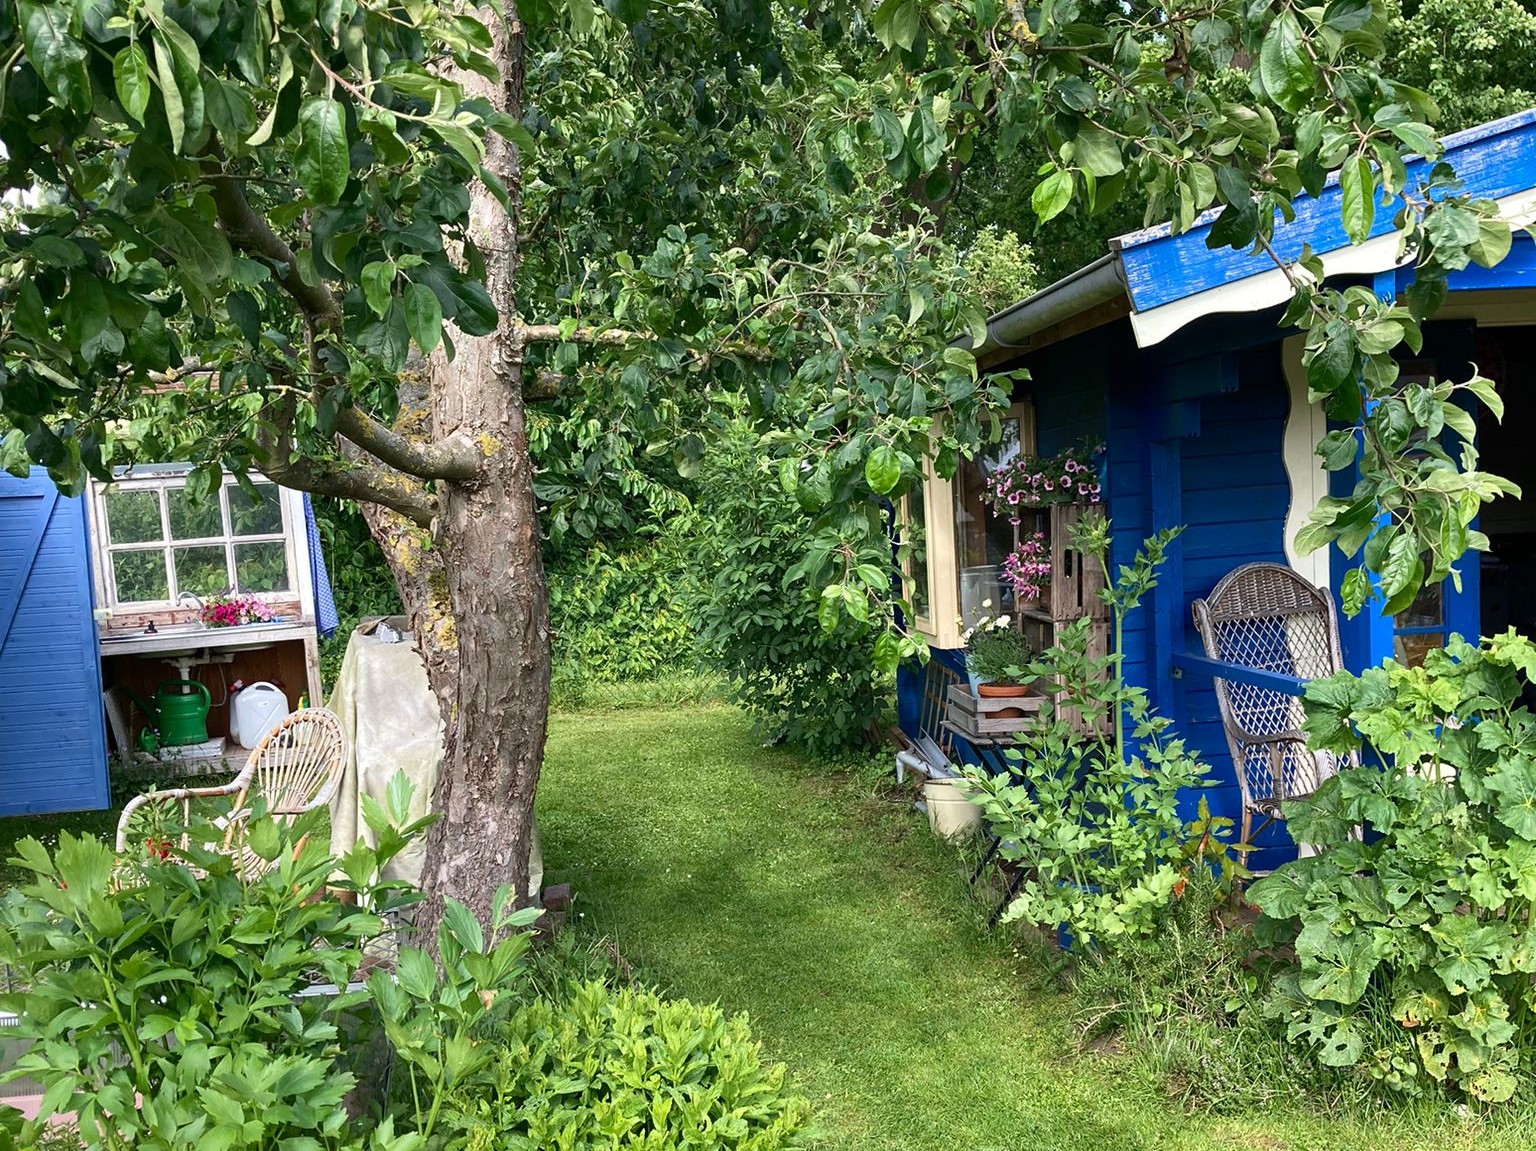 Kleingarten mit viel Grün und einer blauen Hütte